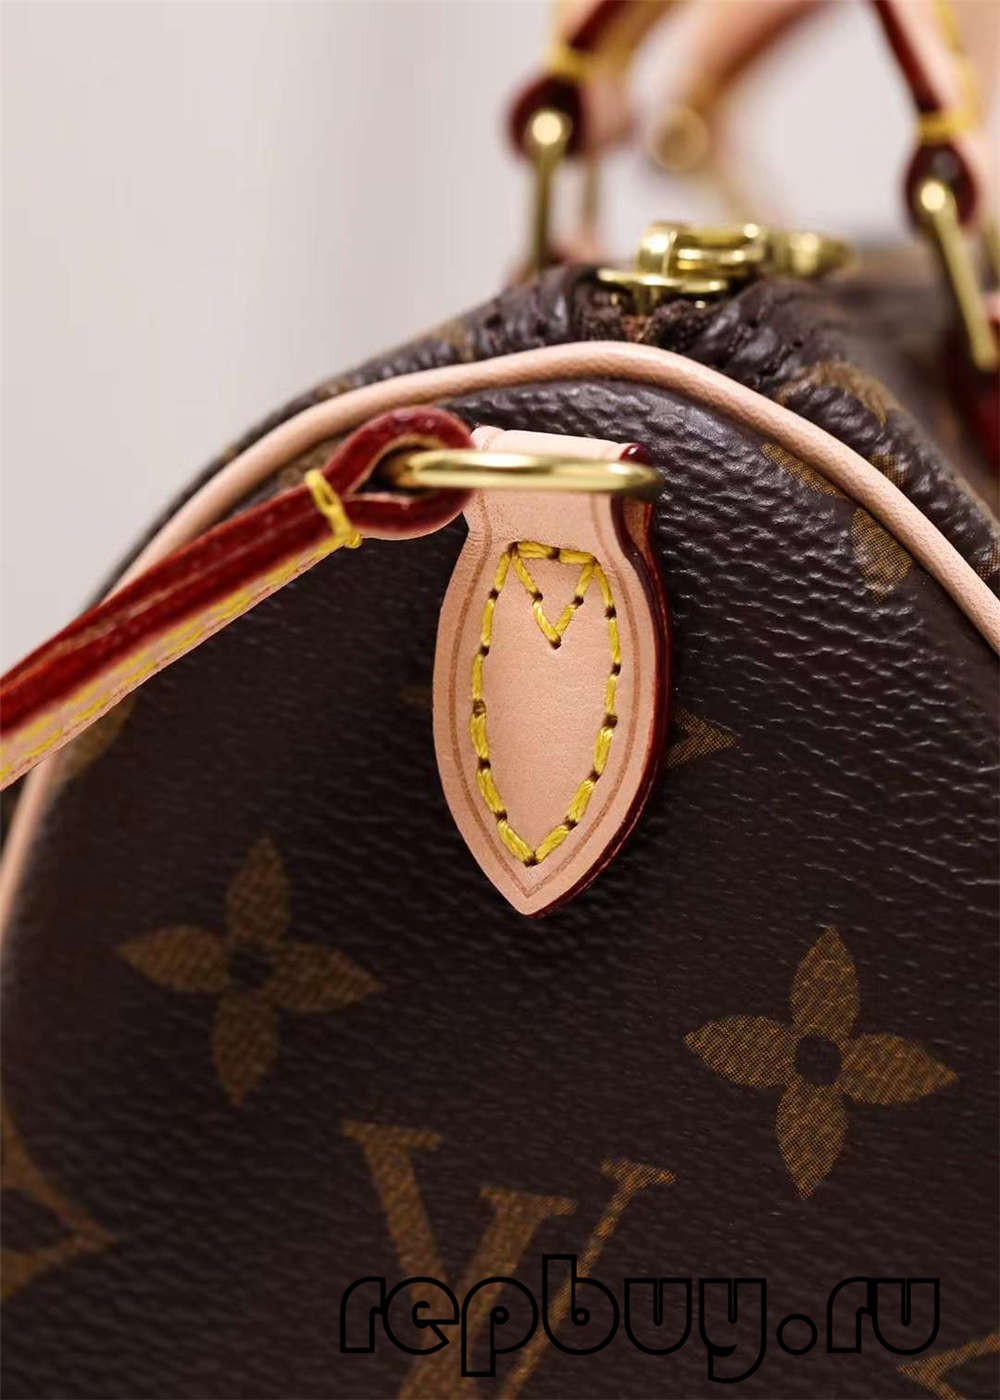 Louis Vuitton M81085 Nano Speedy 16 cm vrhunske replike vrečk (posodobljeno 2022) – spletna trgovina ponaredkov Louis Vuitton torbe najboljše kakovosti, dizajnerska torba replike ru